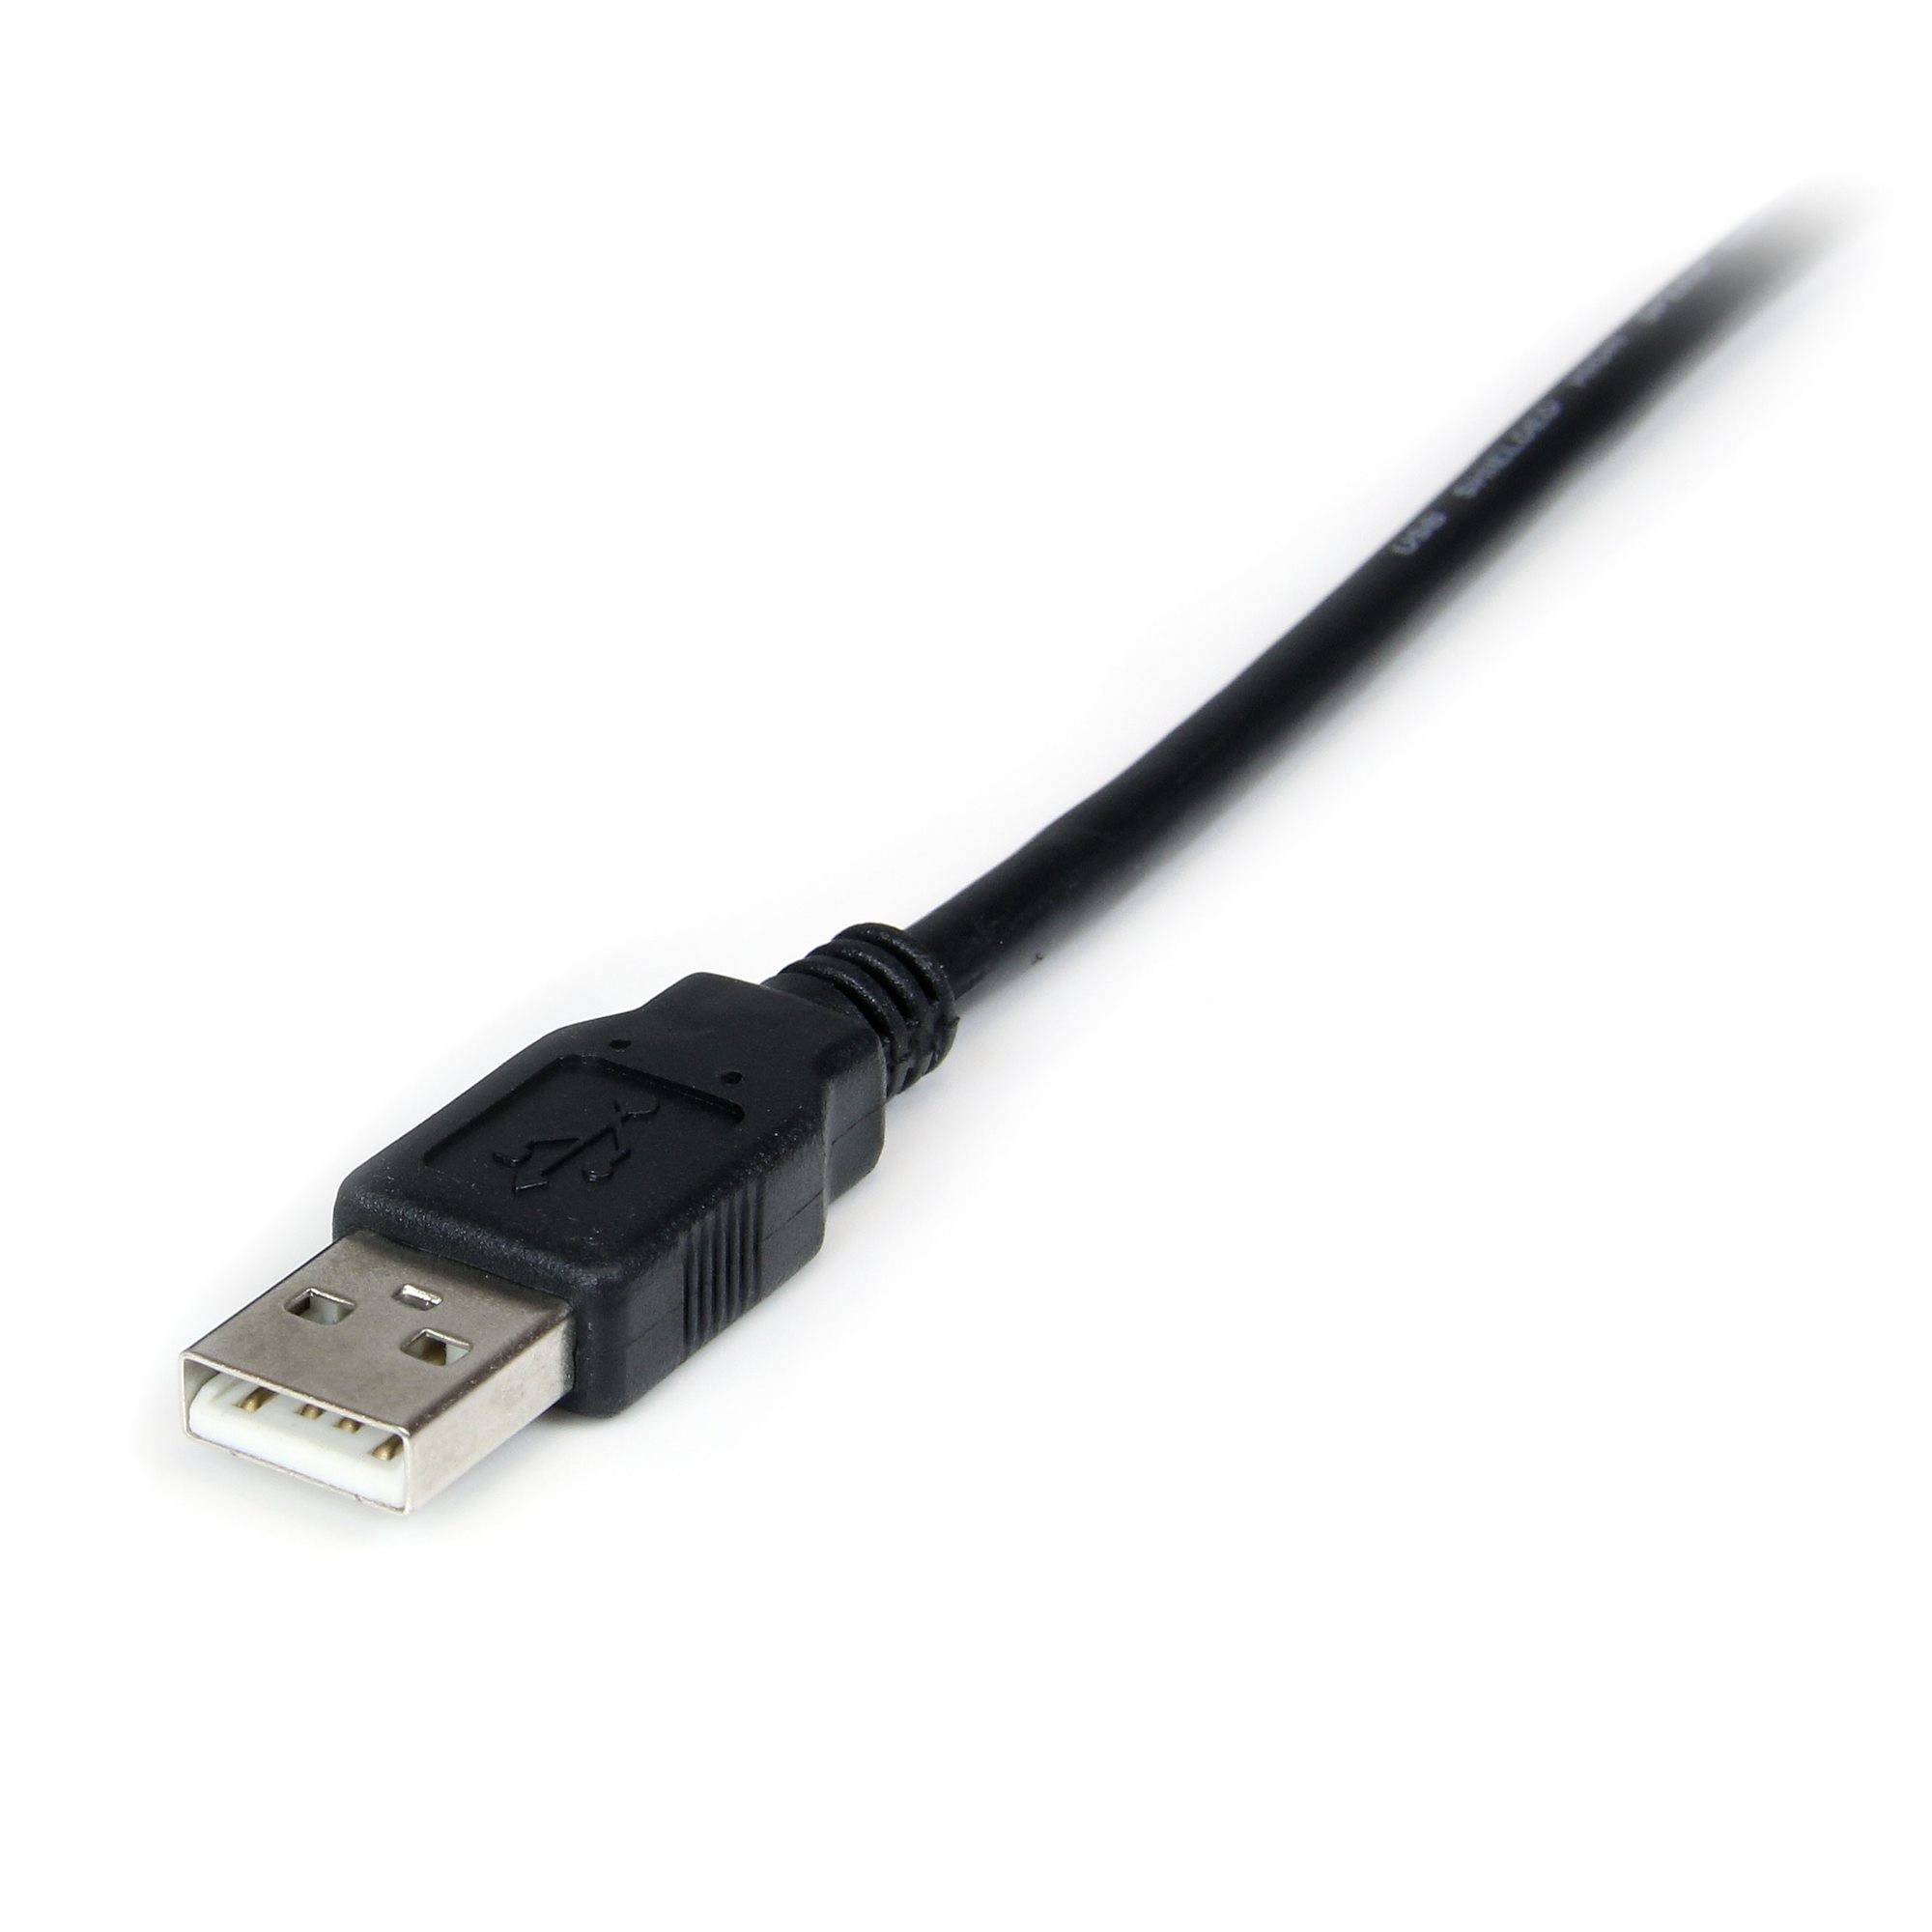 Rca Informatique - image du produit : ADAPTATEUR FTDI USB 1PORT VERS NULL MODEM RS232